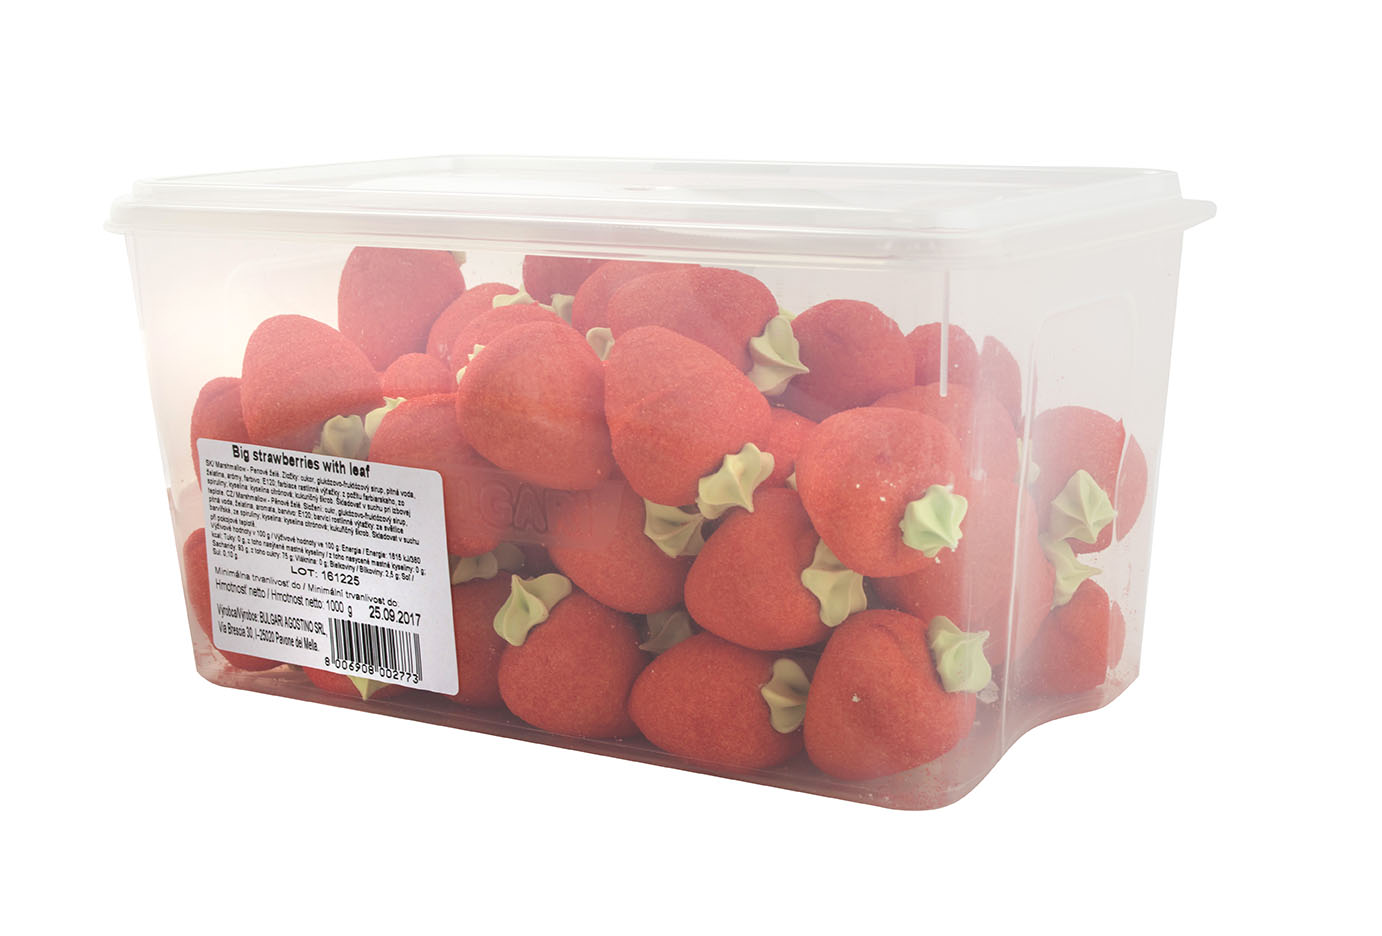 Big strawberries with leaf - pěnové želé jahody cca 60 ks 1000g